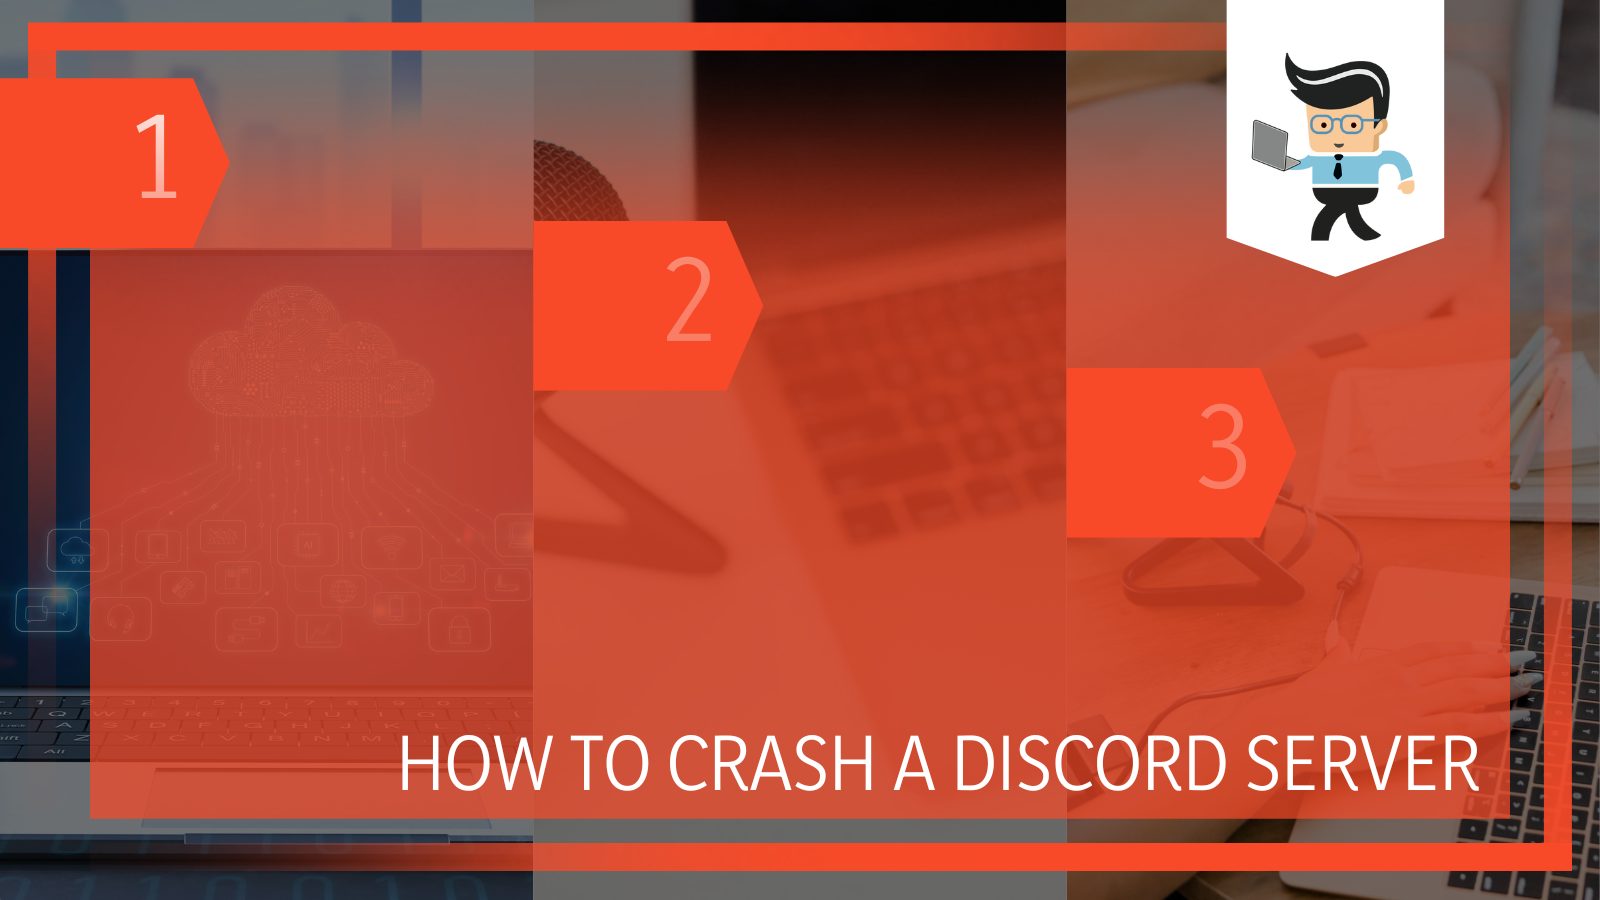 How To Crash a Discord Server